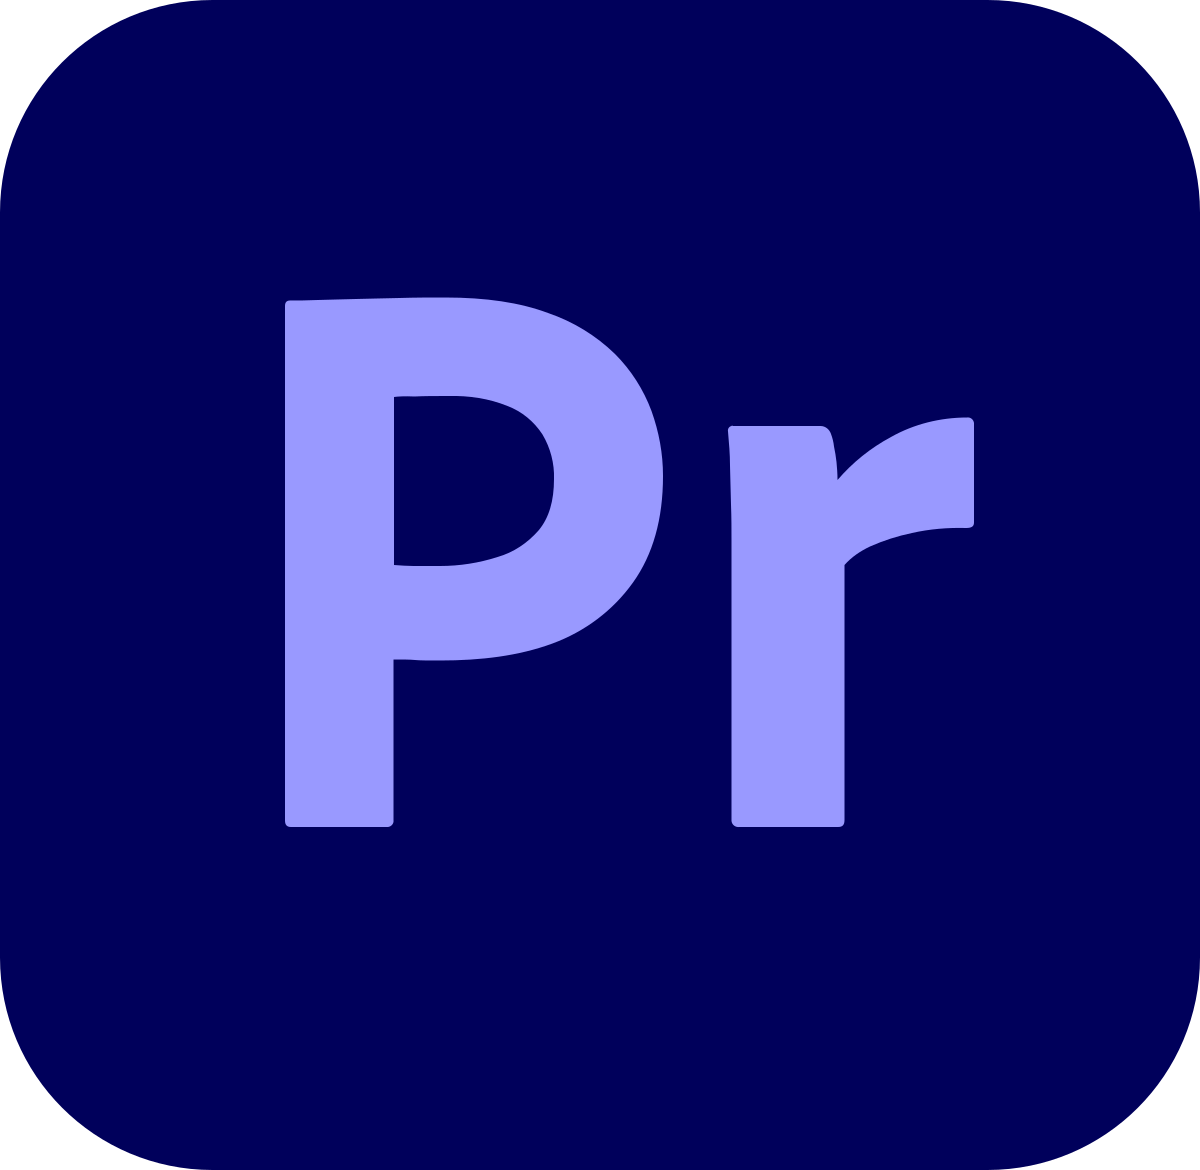 Deinstallieren Sie Adobe Premiere Pro von Ihrem Computer.
Laden Sie die neueste Version von Adobe Premiere Pro von der Adobe-Website herunter.